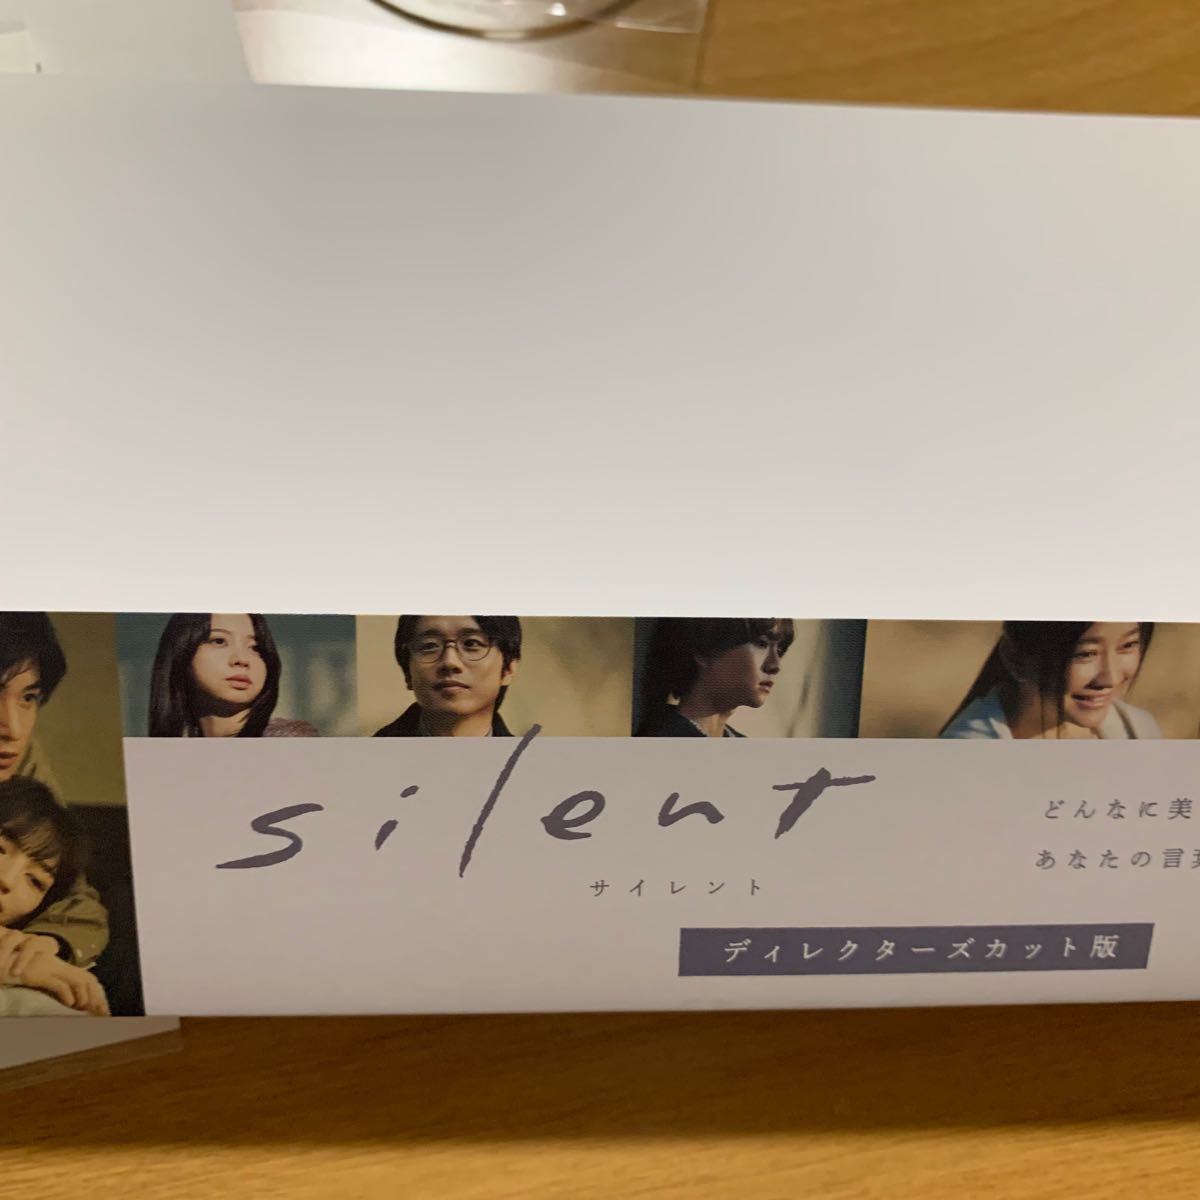 目黒蓮出演ドラマ silent ディレクターズカット版DVDBOX-